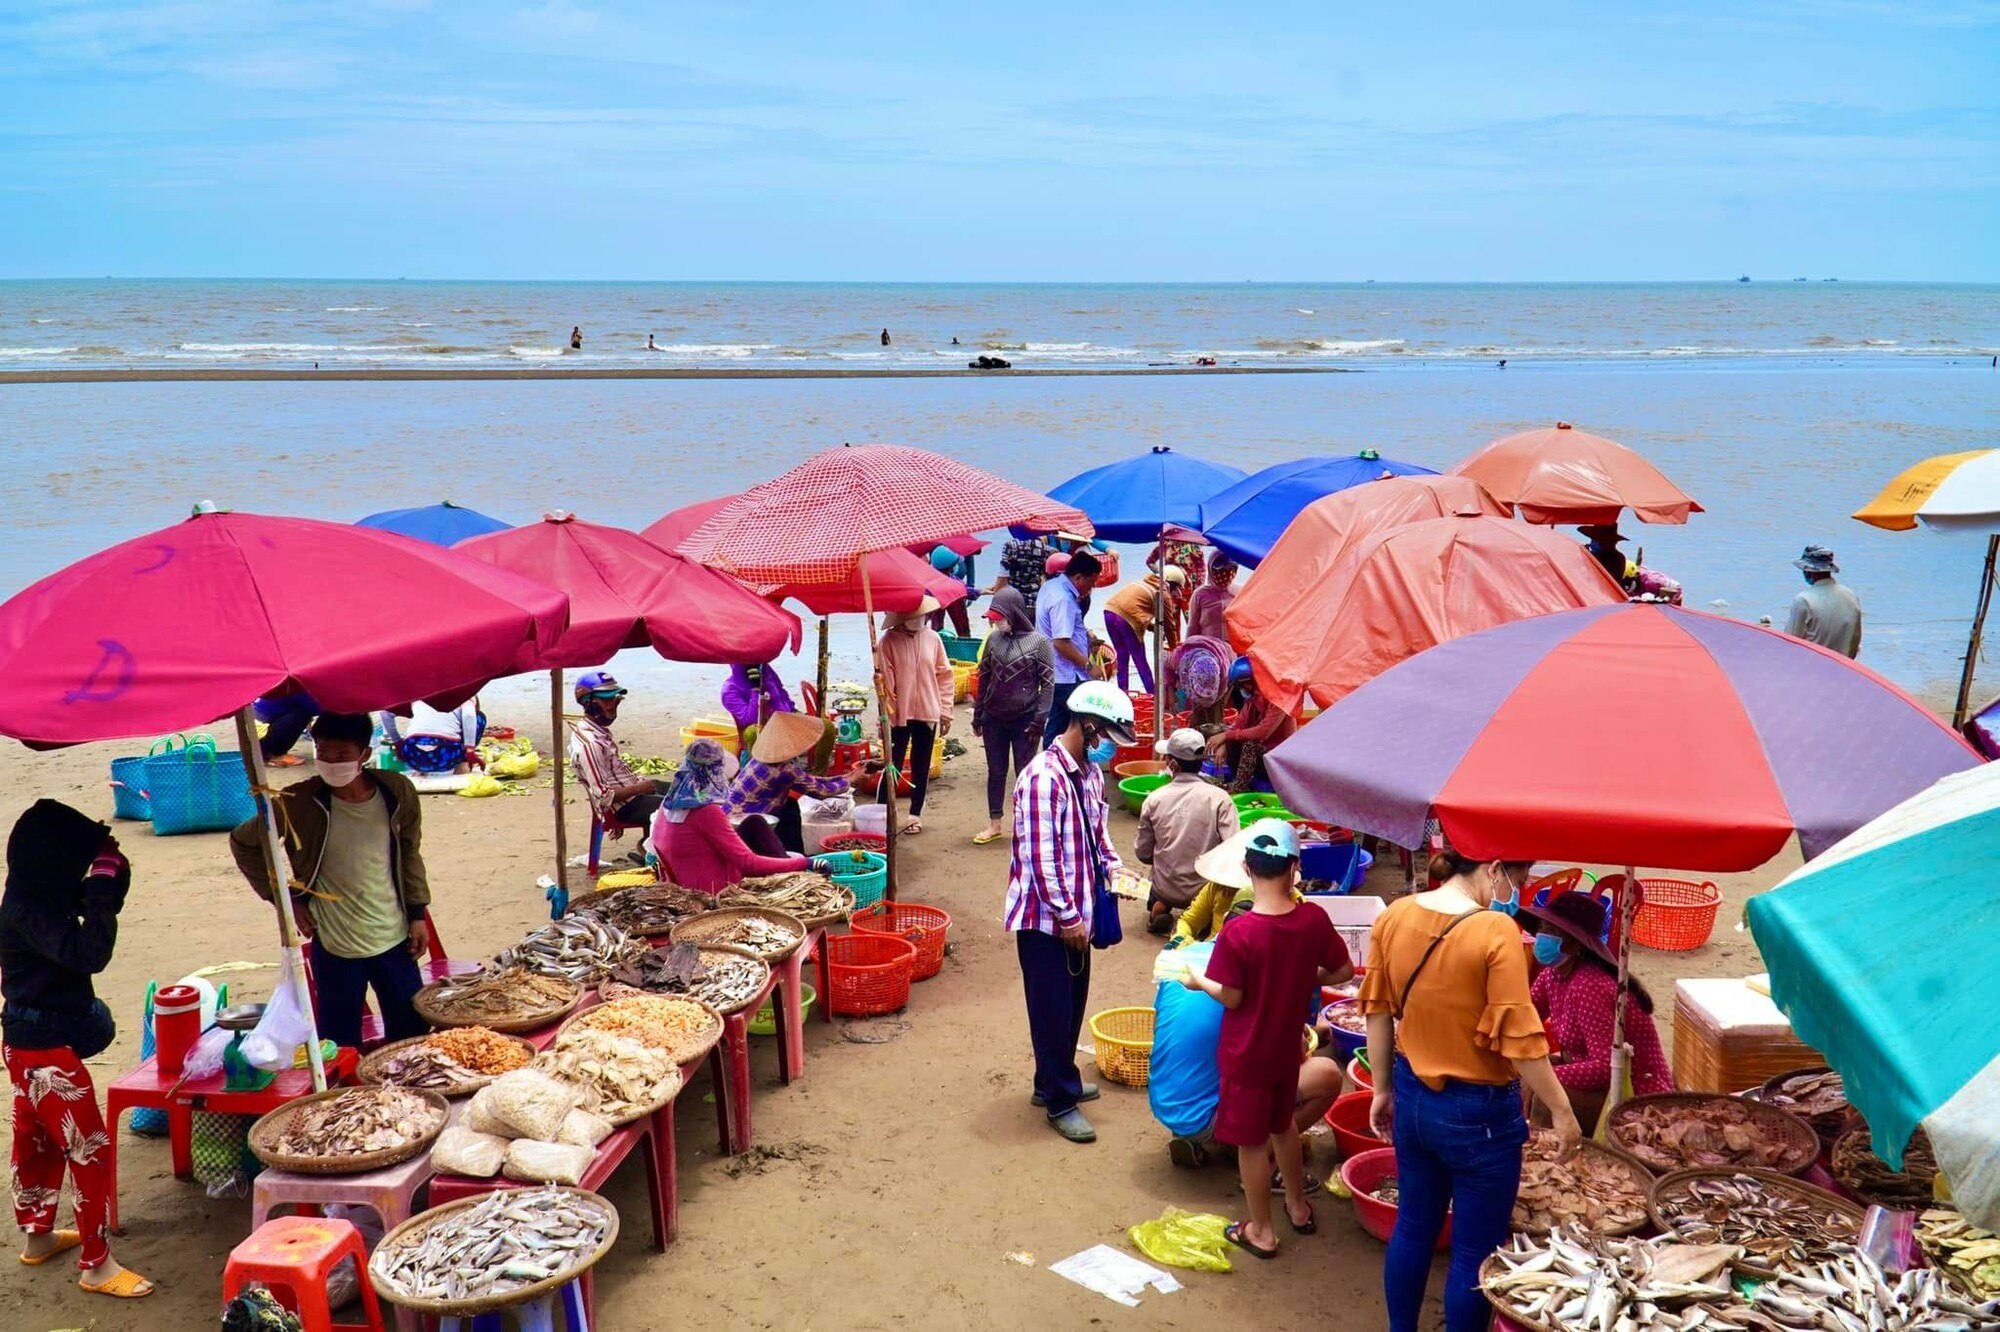 Chợ biển ở một huyện của Bến Tre họp ngay mép sóng, mua bán la liệt tôm, cua, cá, ốc ngon, lạ mắt- Ảnh 1.